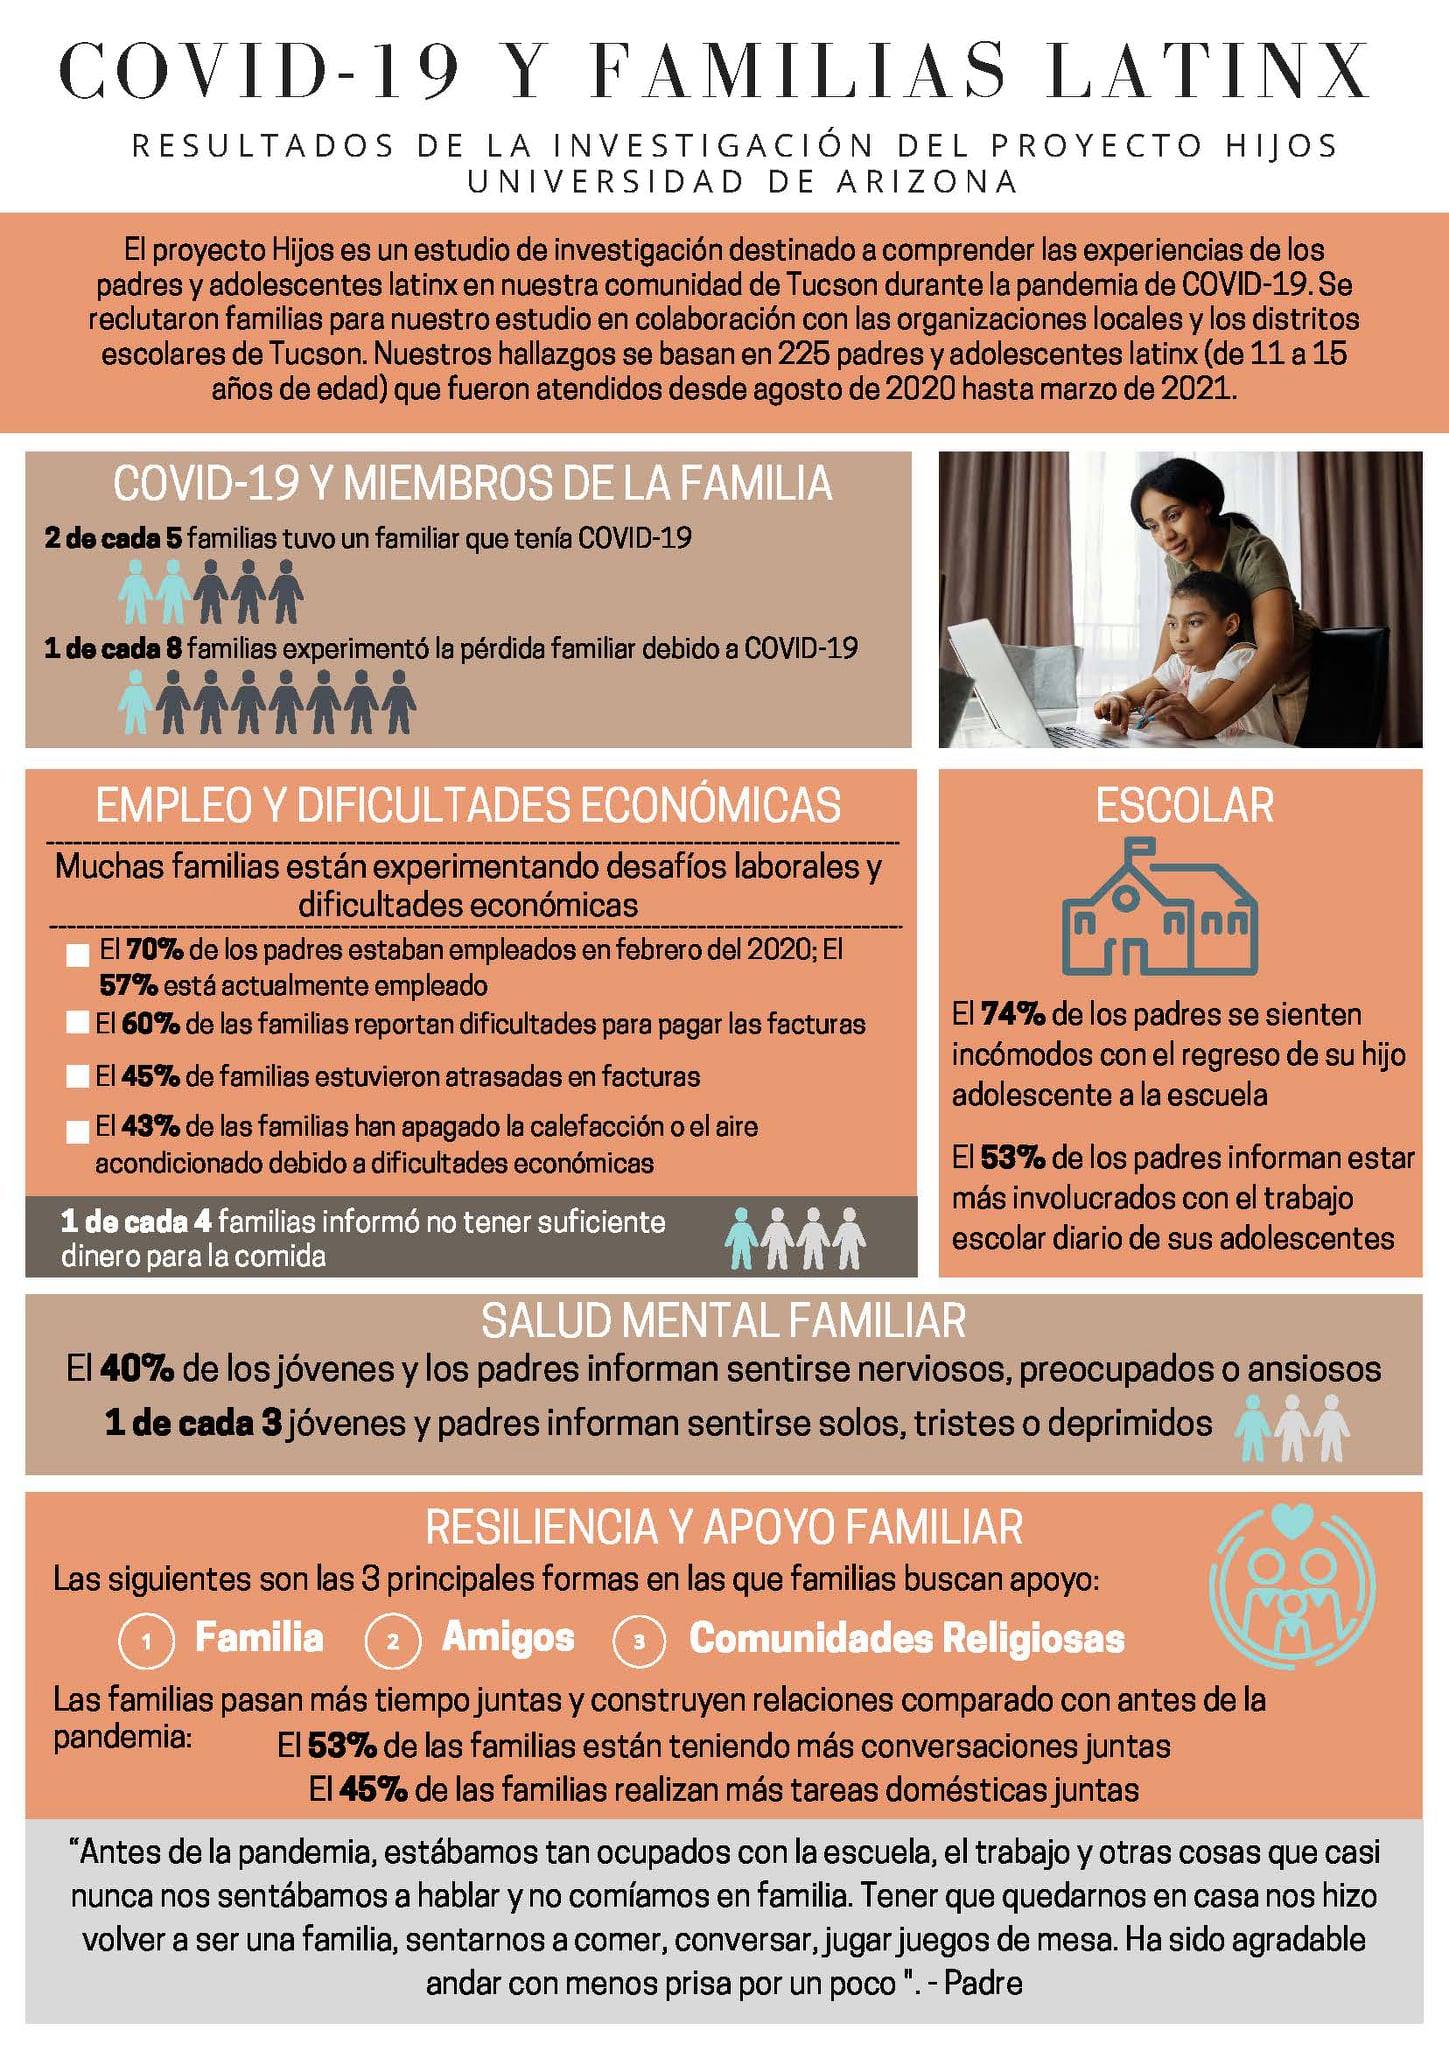 COVID-19 Y FAMILIAS LATINX RESULTADOS DE LA INVESTIGACIÓN DEL PROYECTO HIJOS UNIVERSIDAD DE ARIZONA